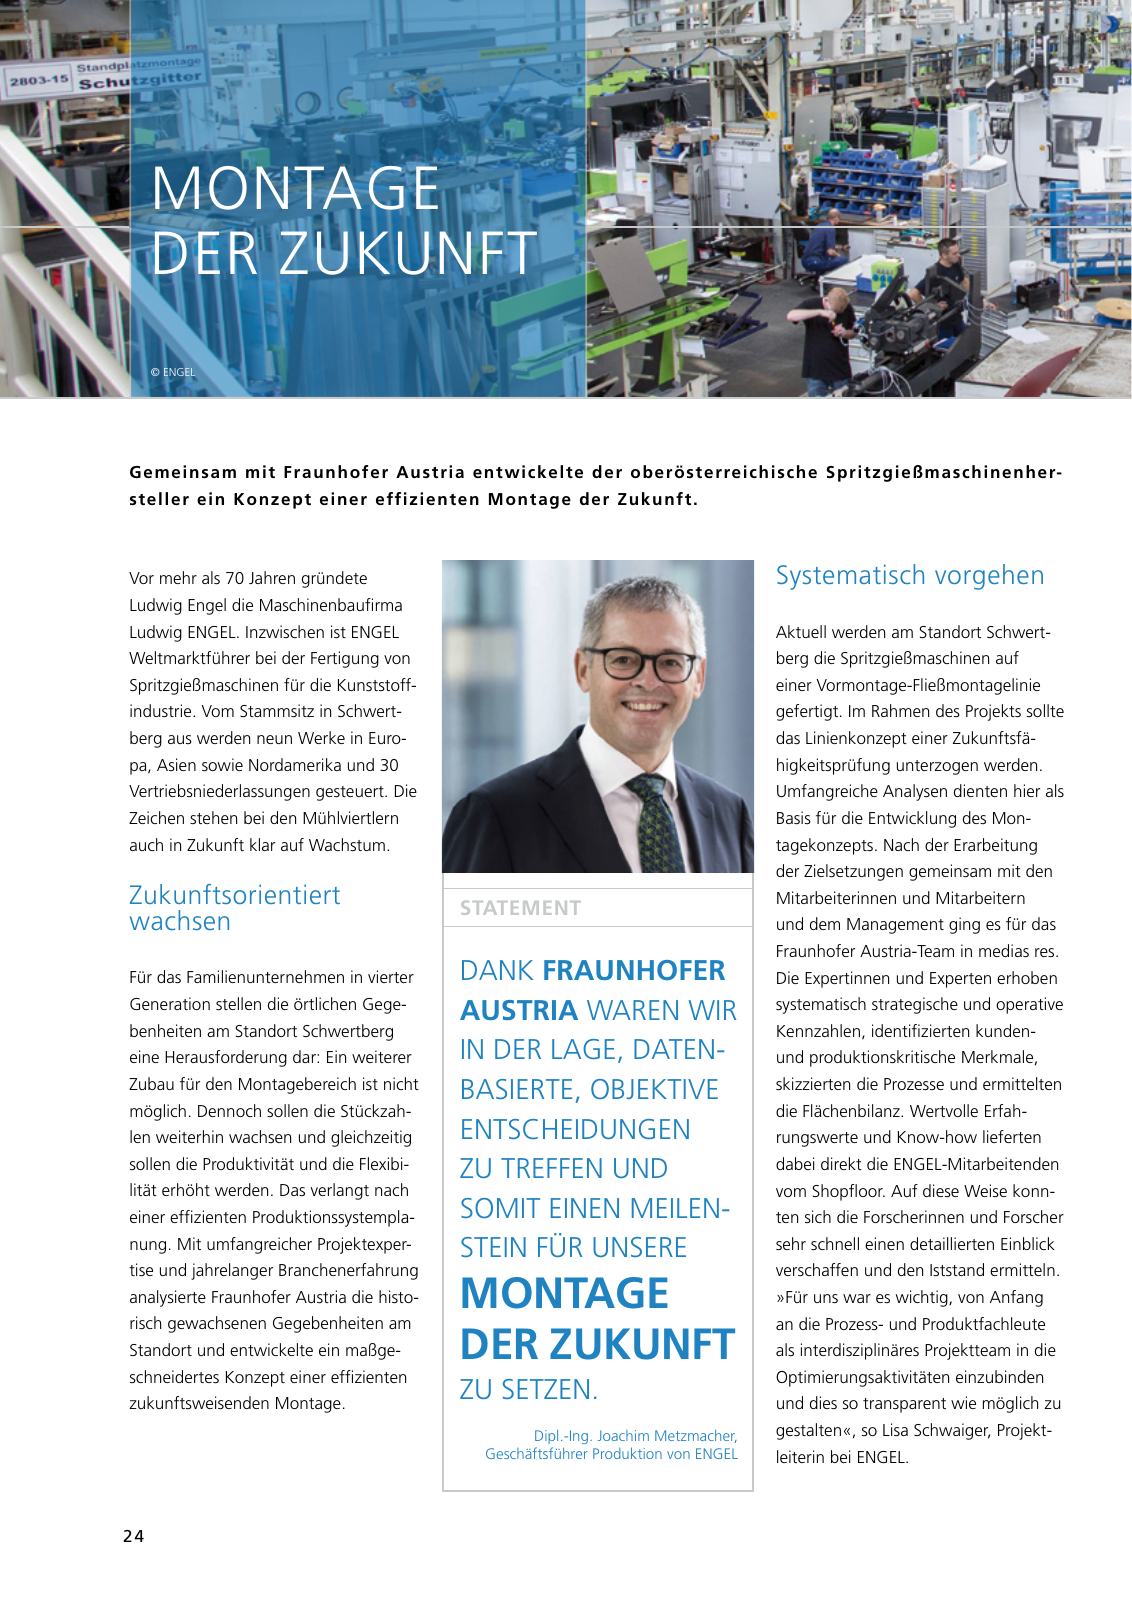 Vorschau Jahresbericht 2017 - Fraunhofer Austria Geschäftsbereich Produktions- und Logistikmanagment Seite 24